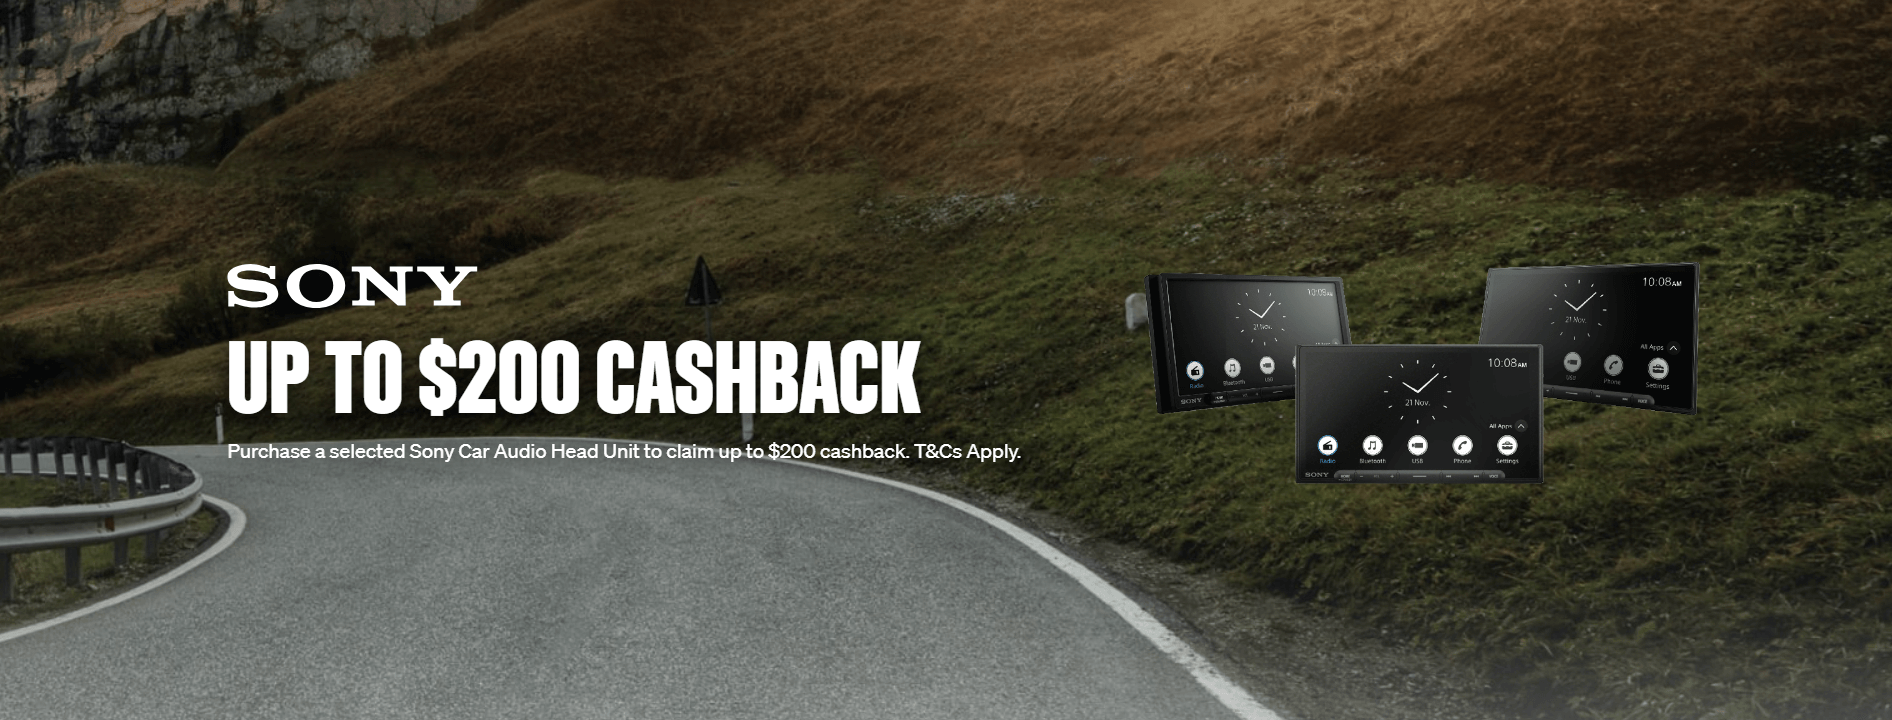 Supercheap Auto - Sony Cashback Offer